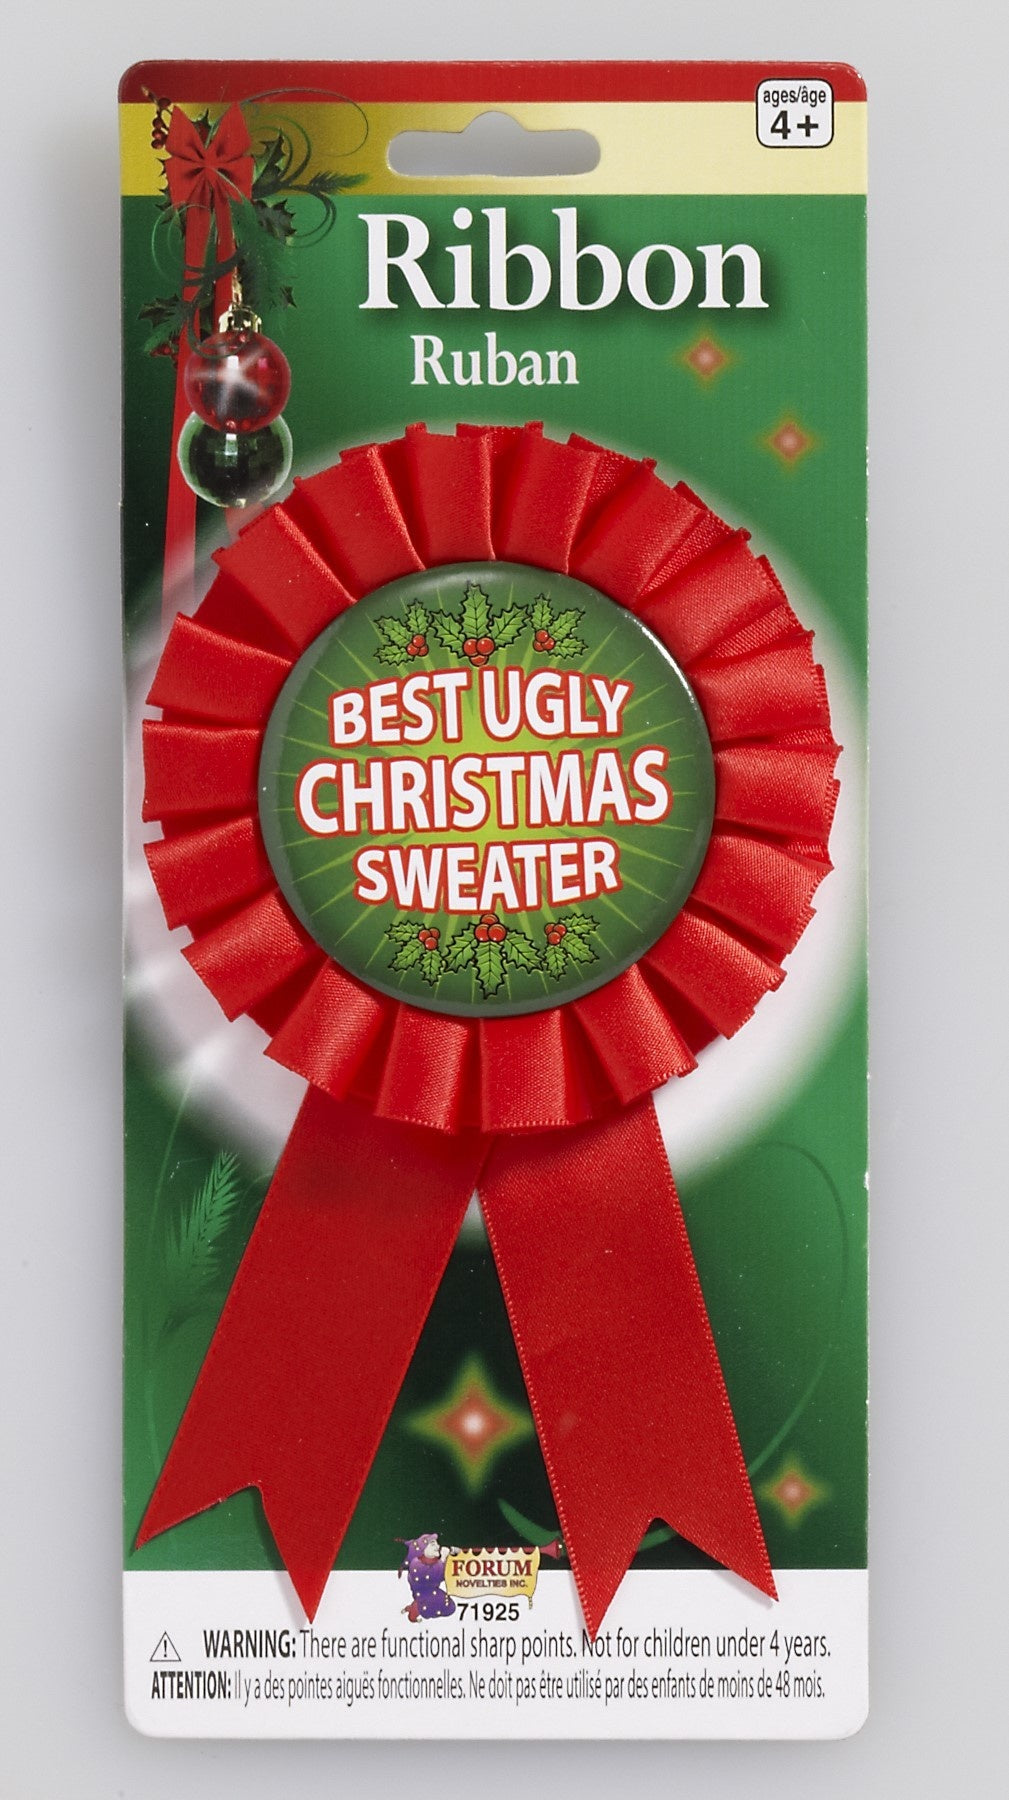 Award Ribbon: Ugliest Christmas Sweater